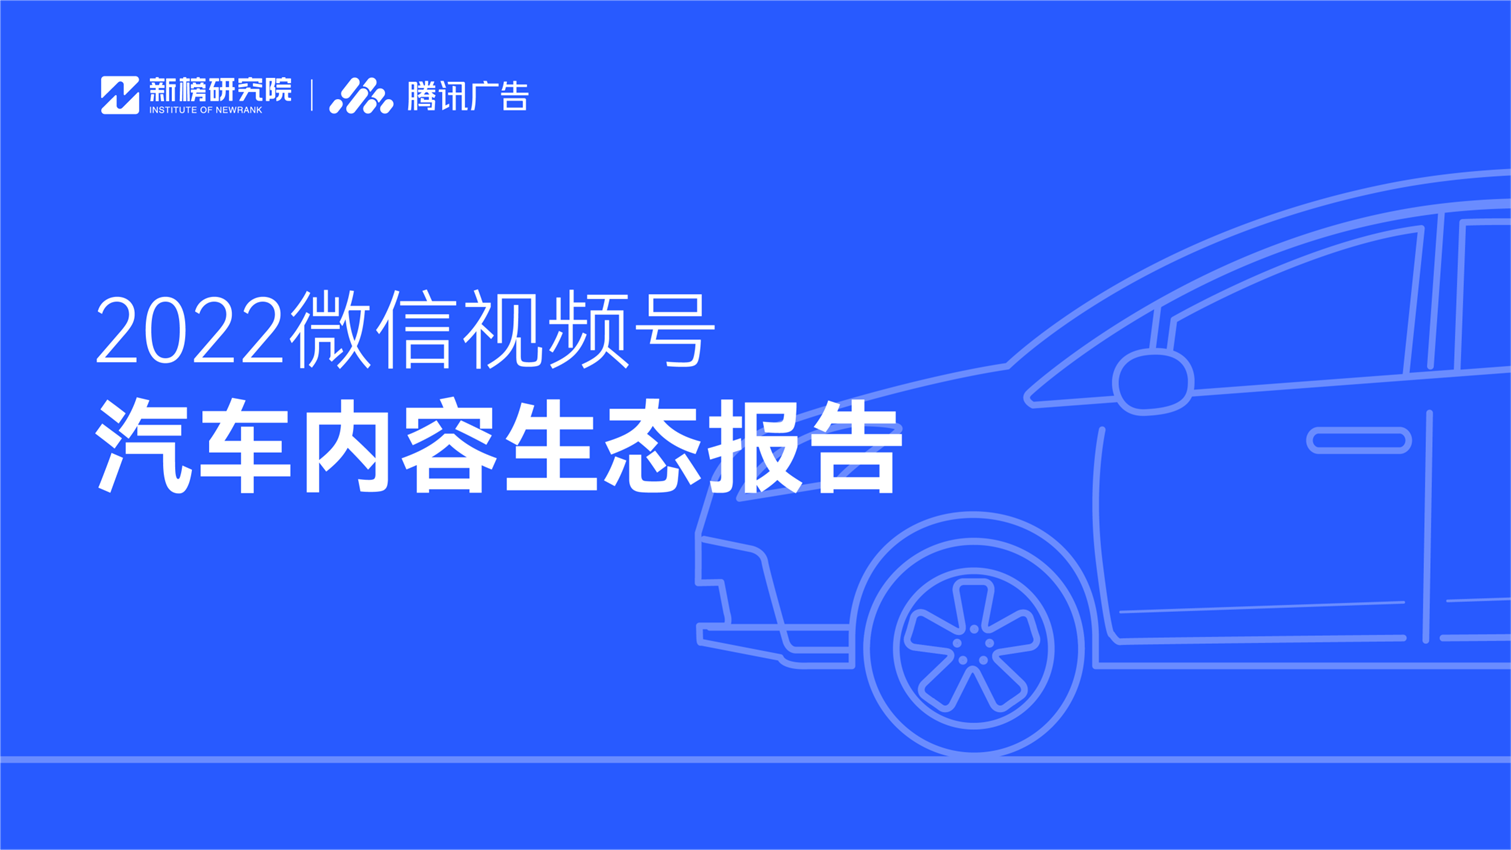 新榜研究院 × 腾讯广告 | 《2022微信视频号汽车内容生态报告》发布